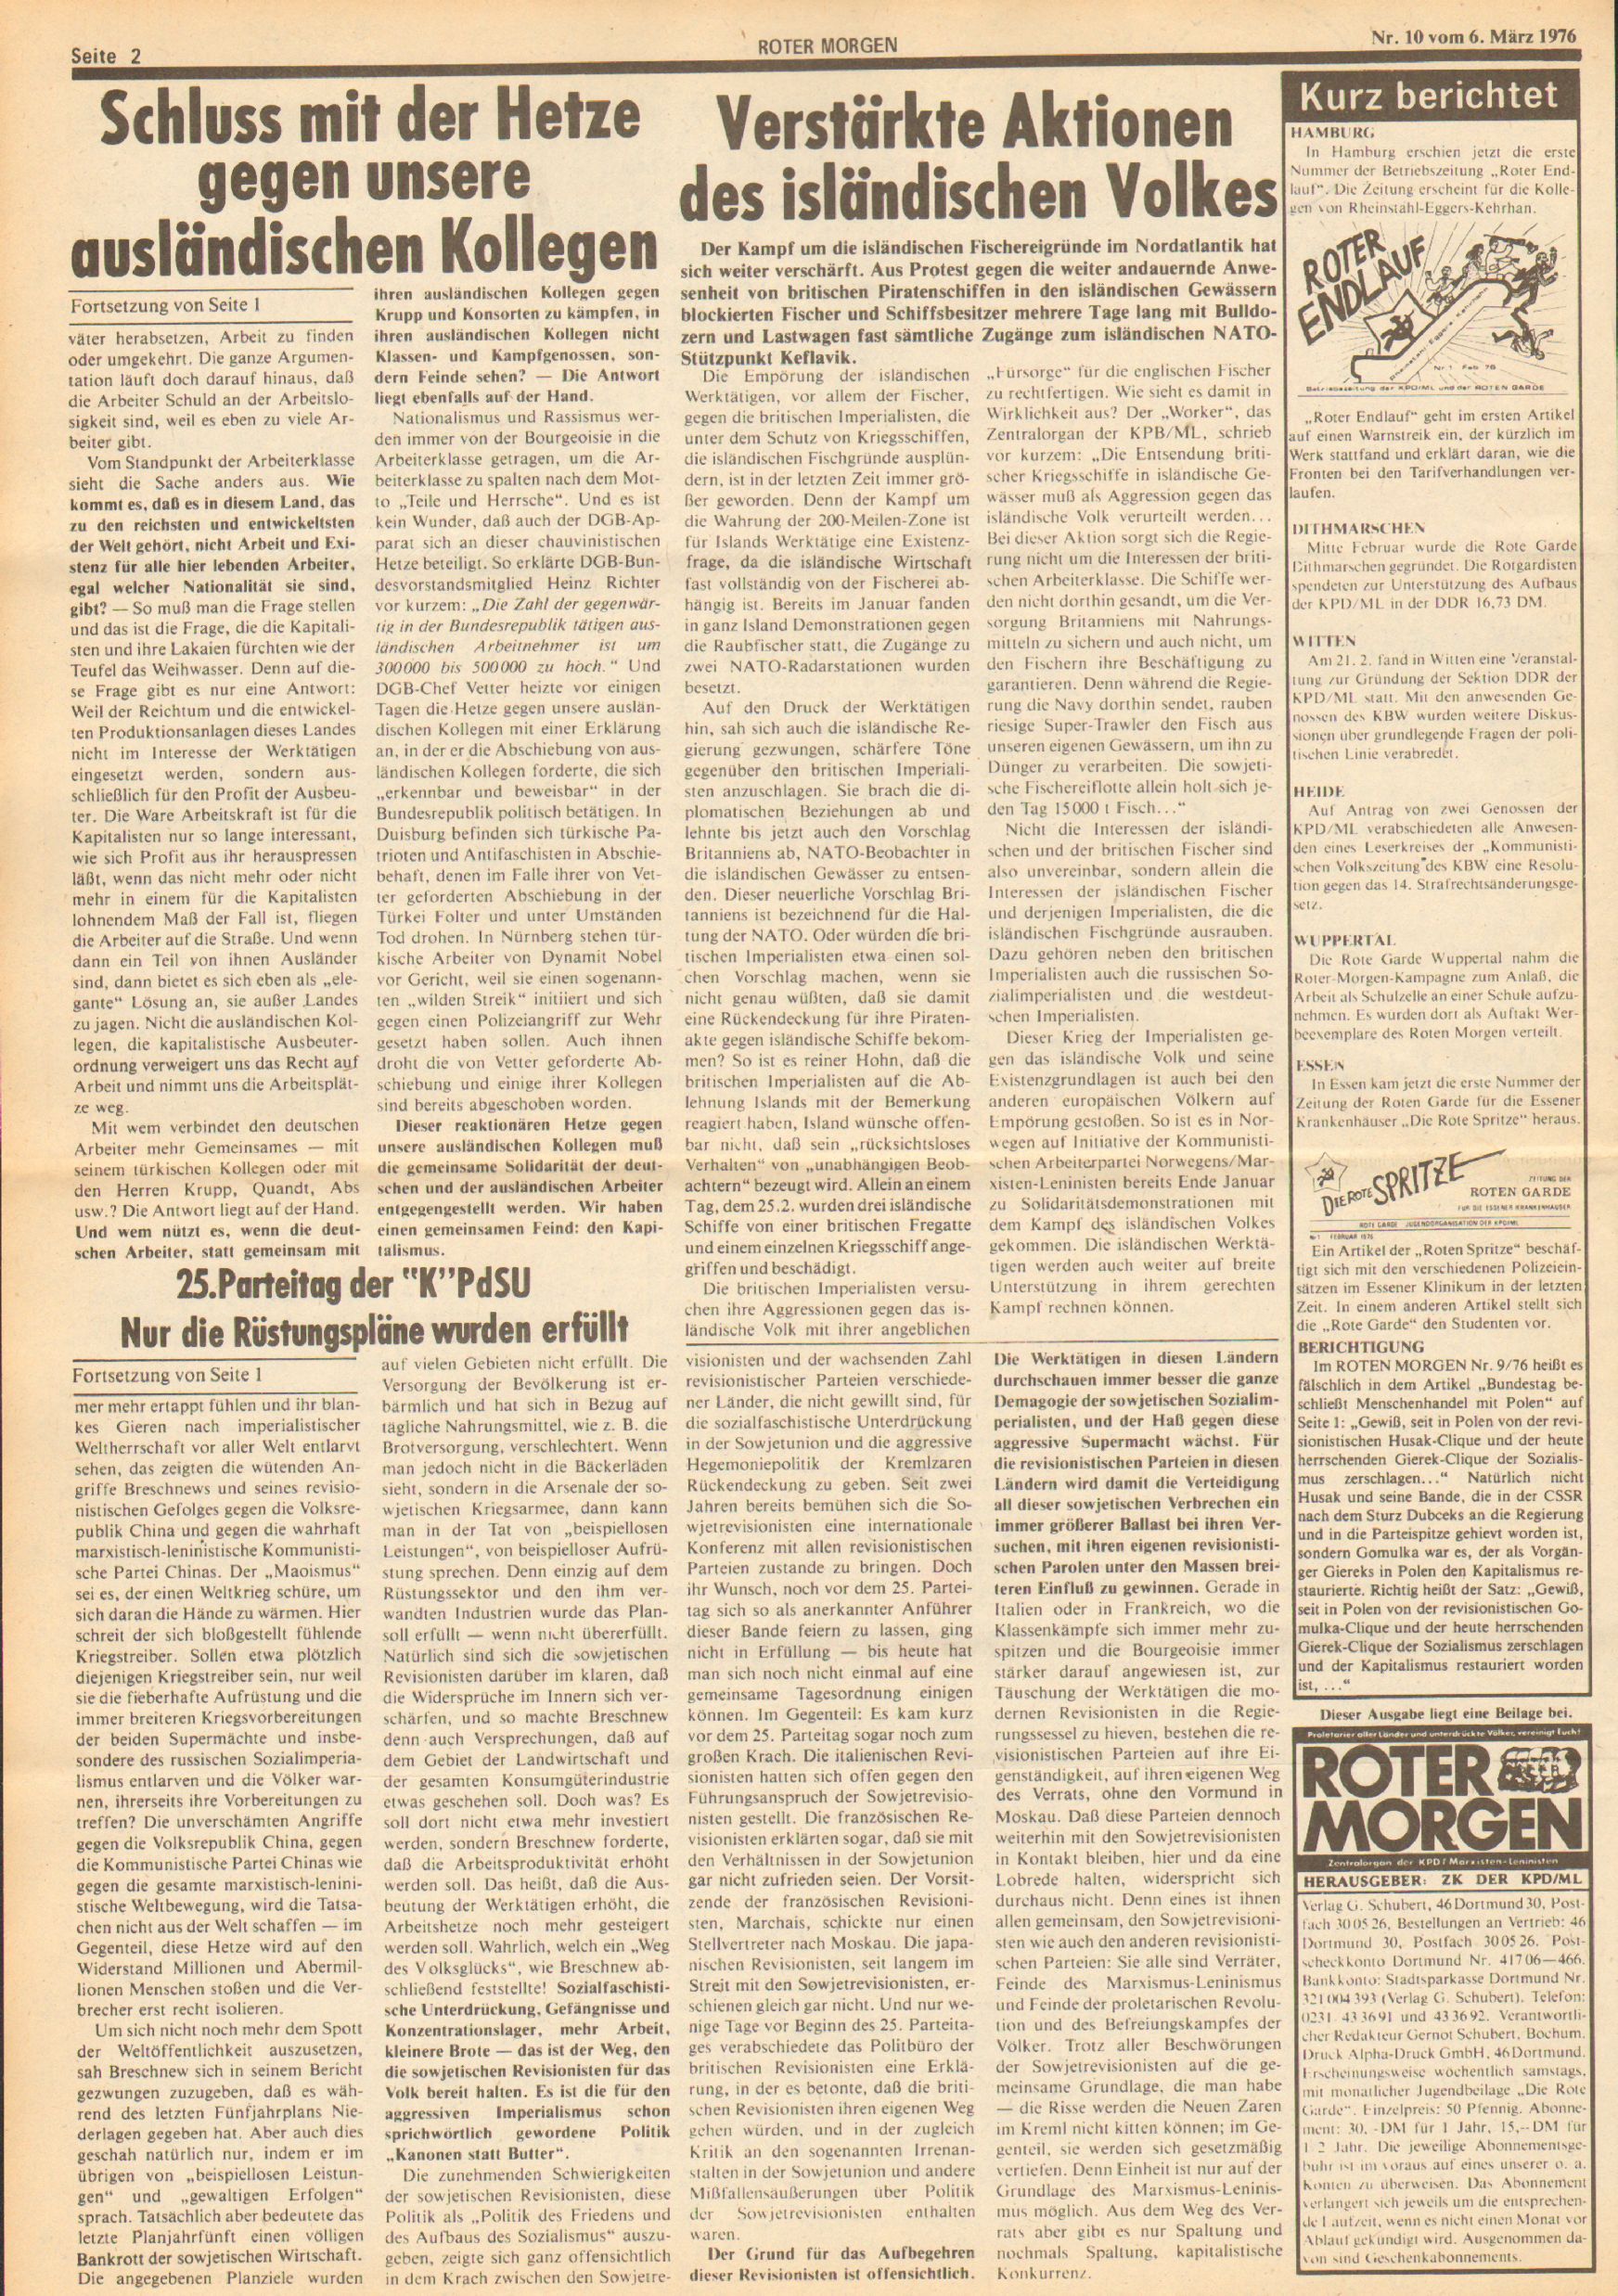 Roter Morgen, 10. Jg., 6. März 1976, Nr. 10, Seite 2